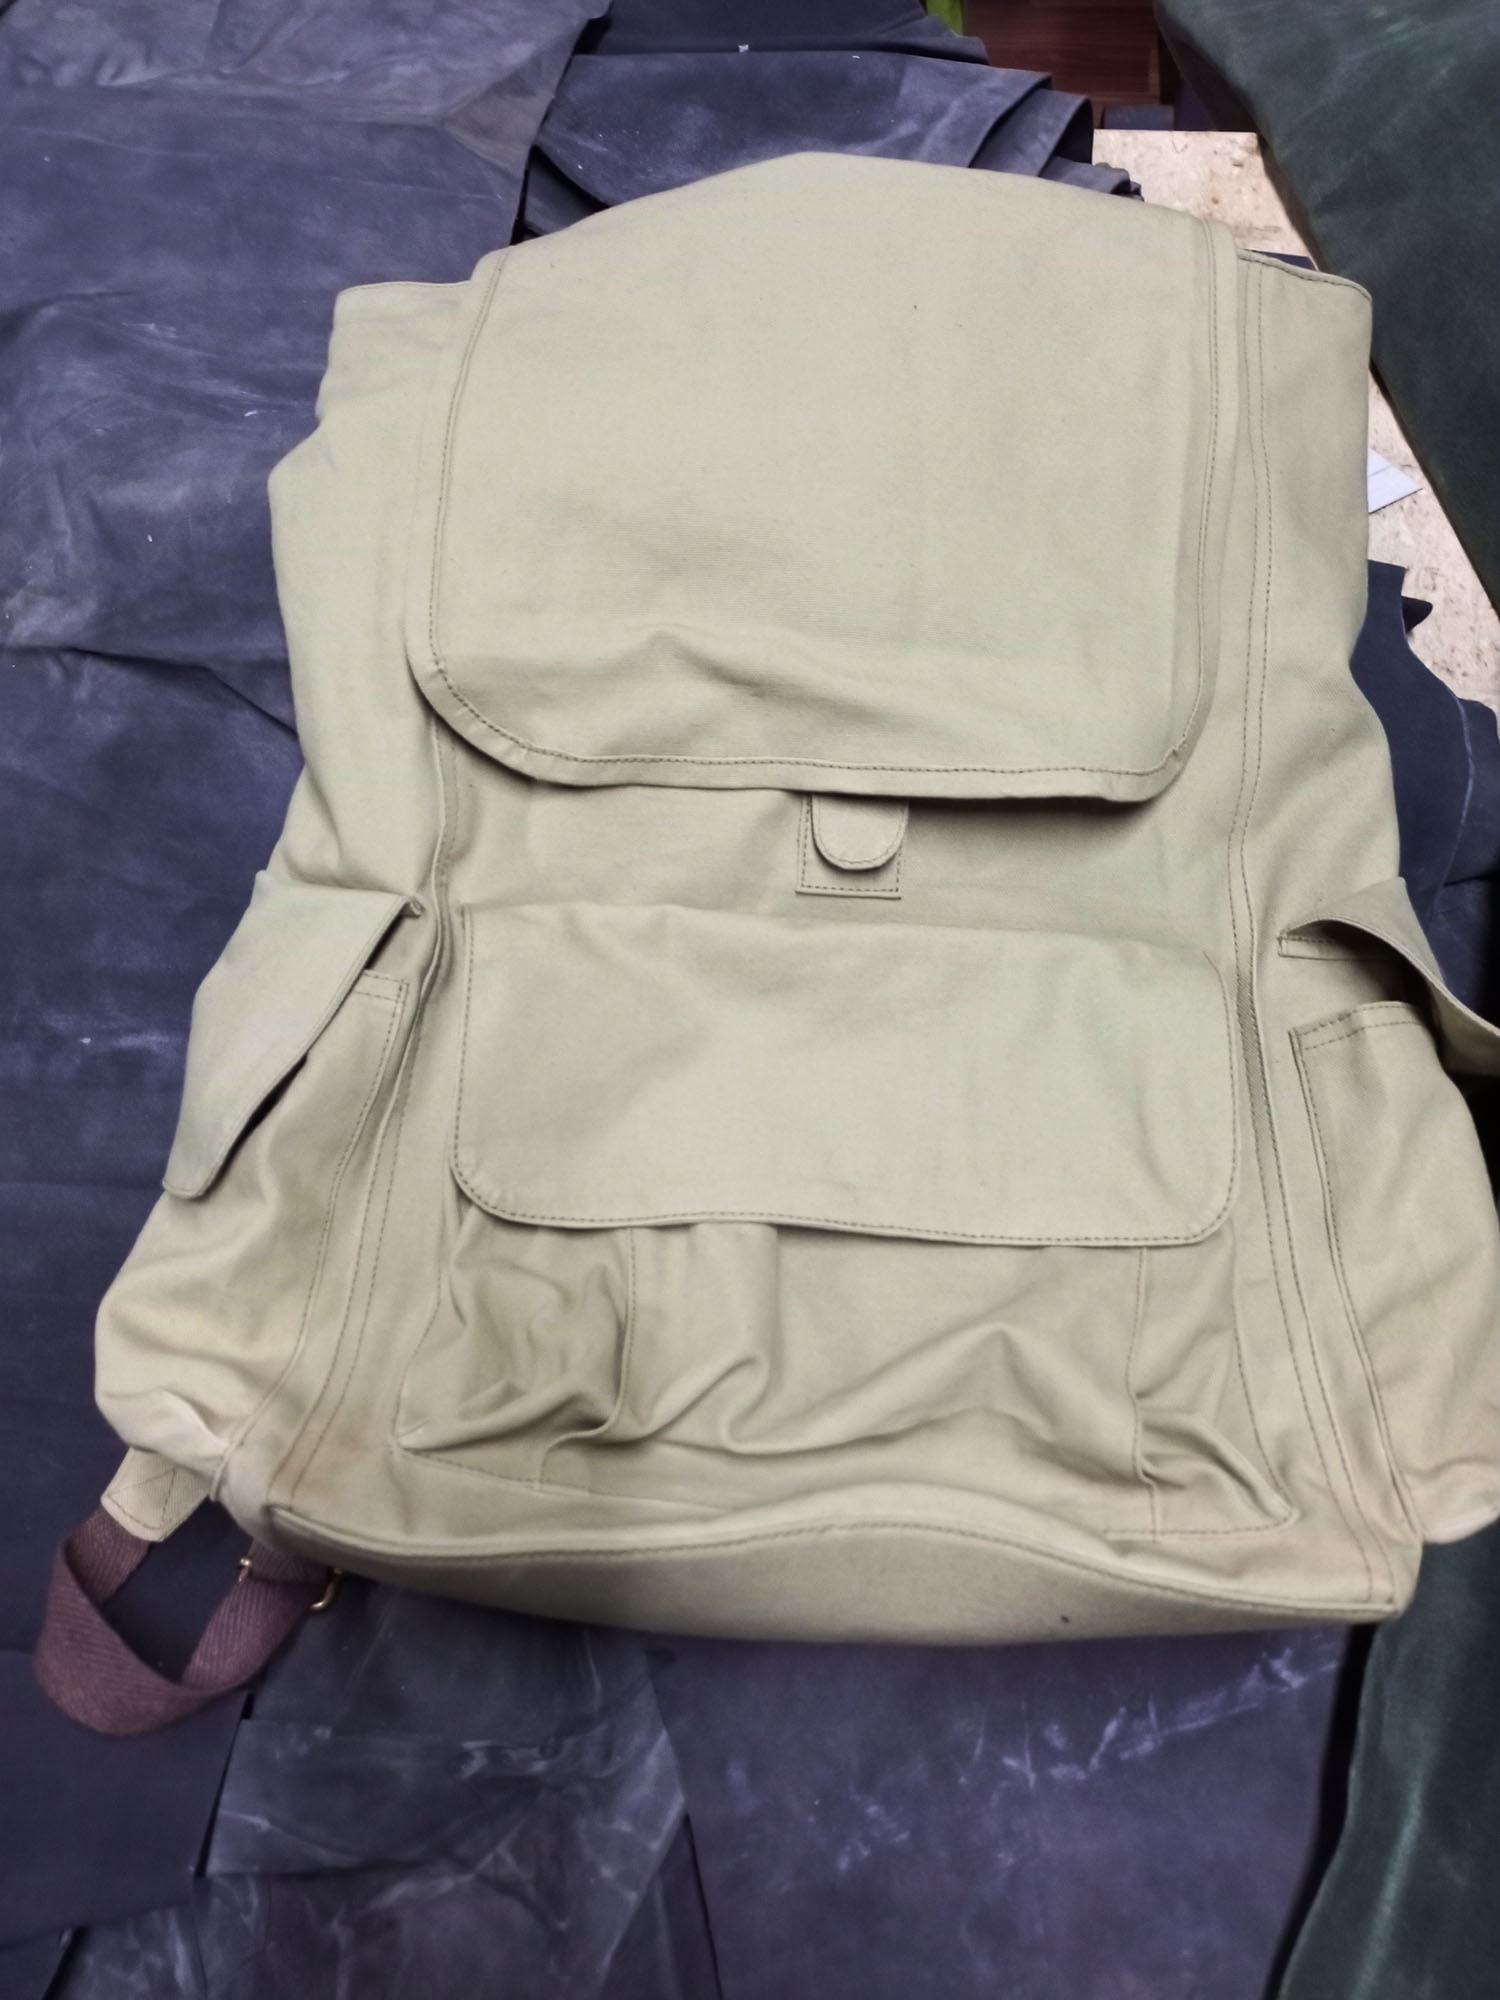 new backpack.jpg